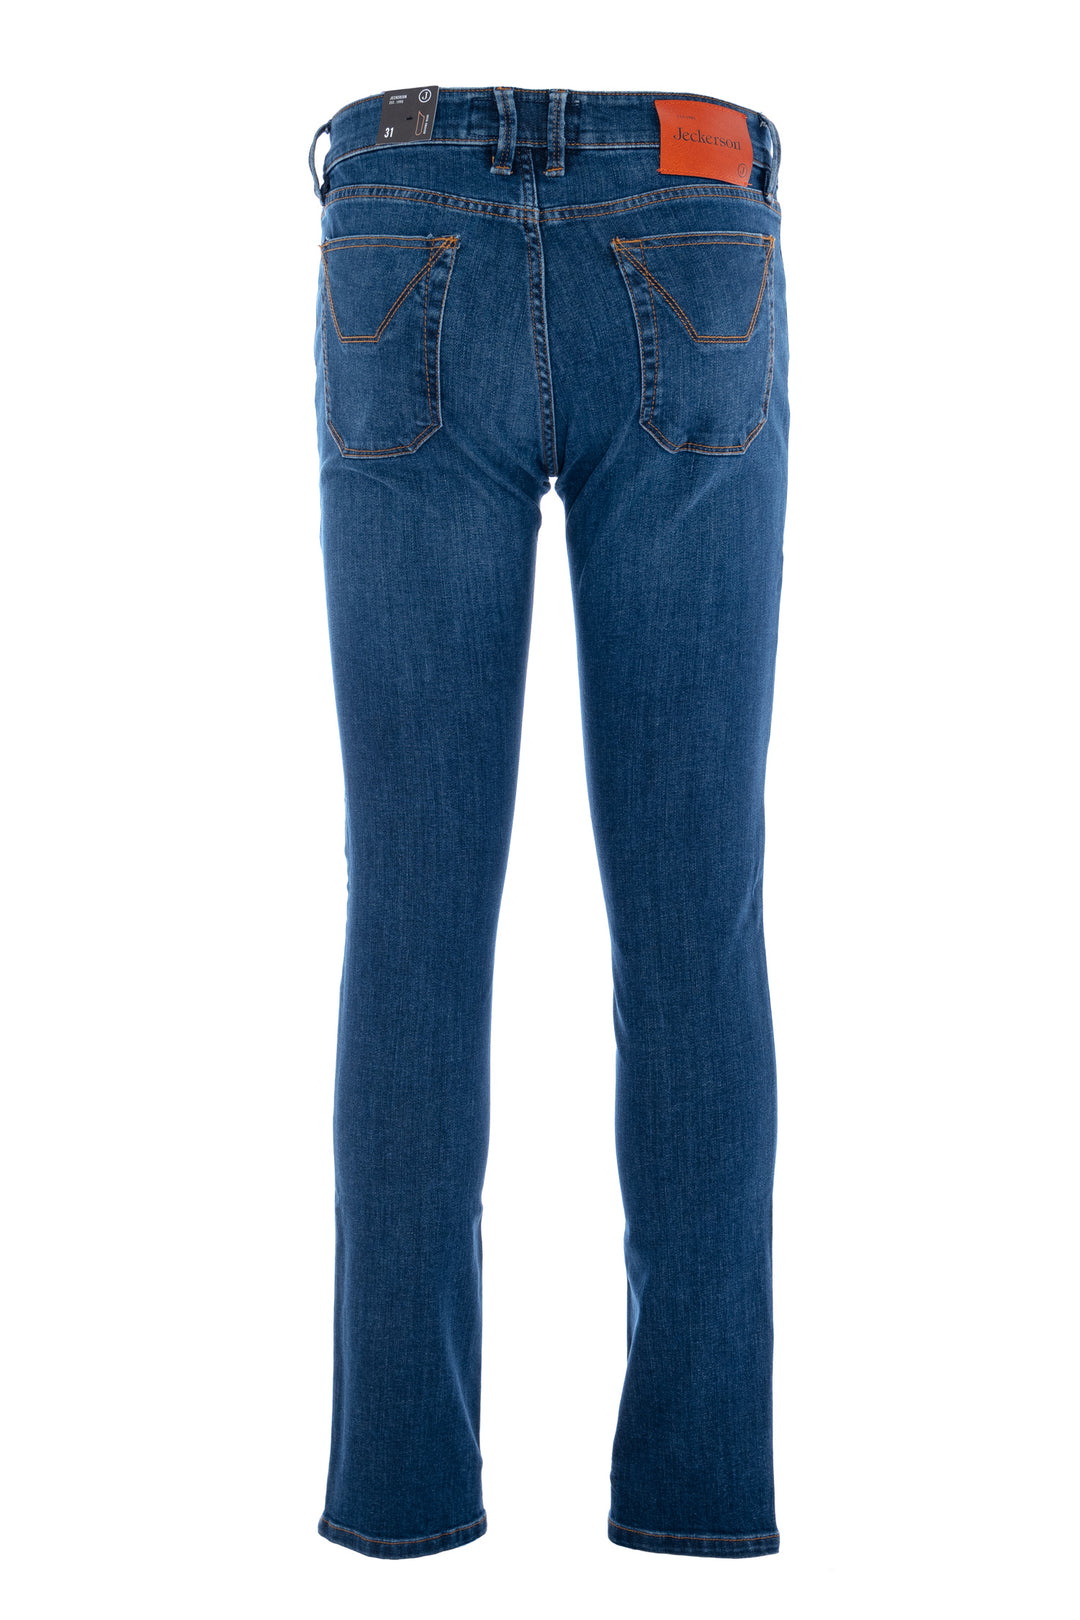 JECKERSON Jeans cinque tasche in denim stretch lavaggio medio con toppe - Mancinelli 1954